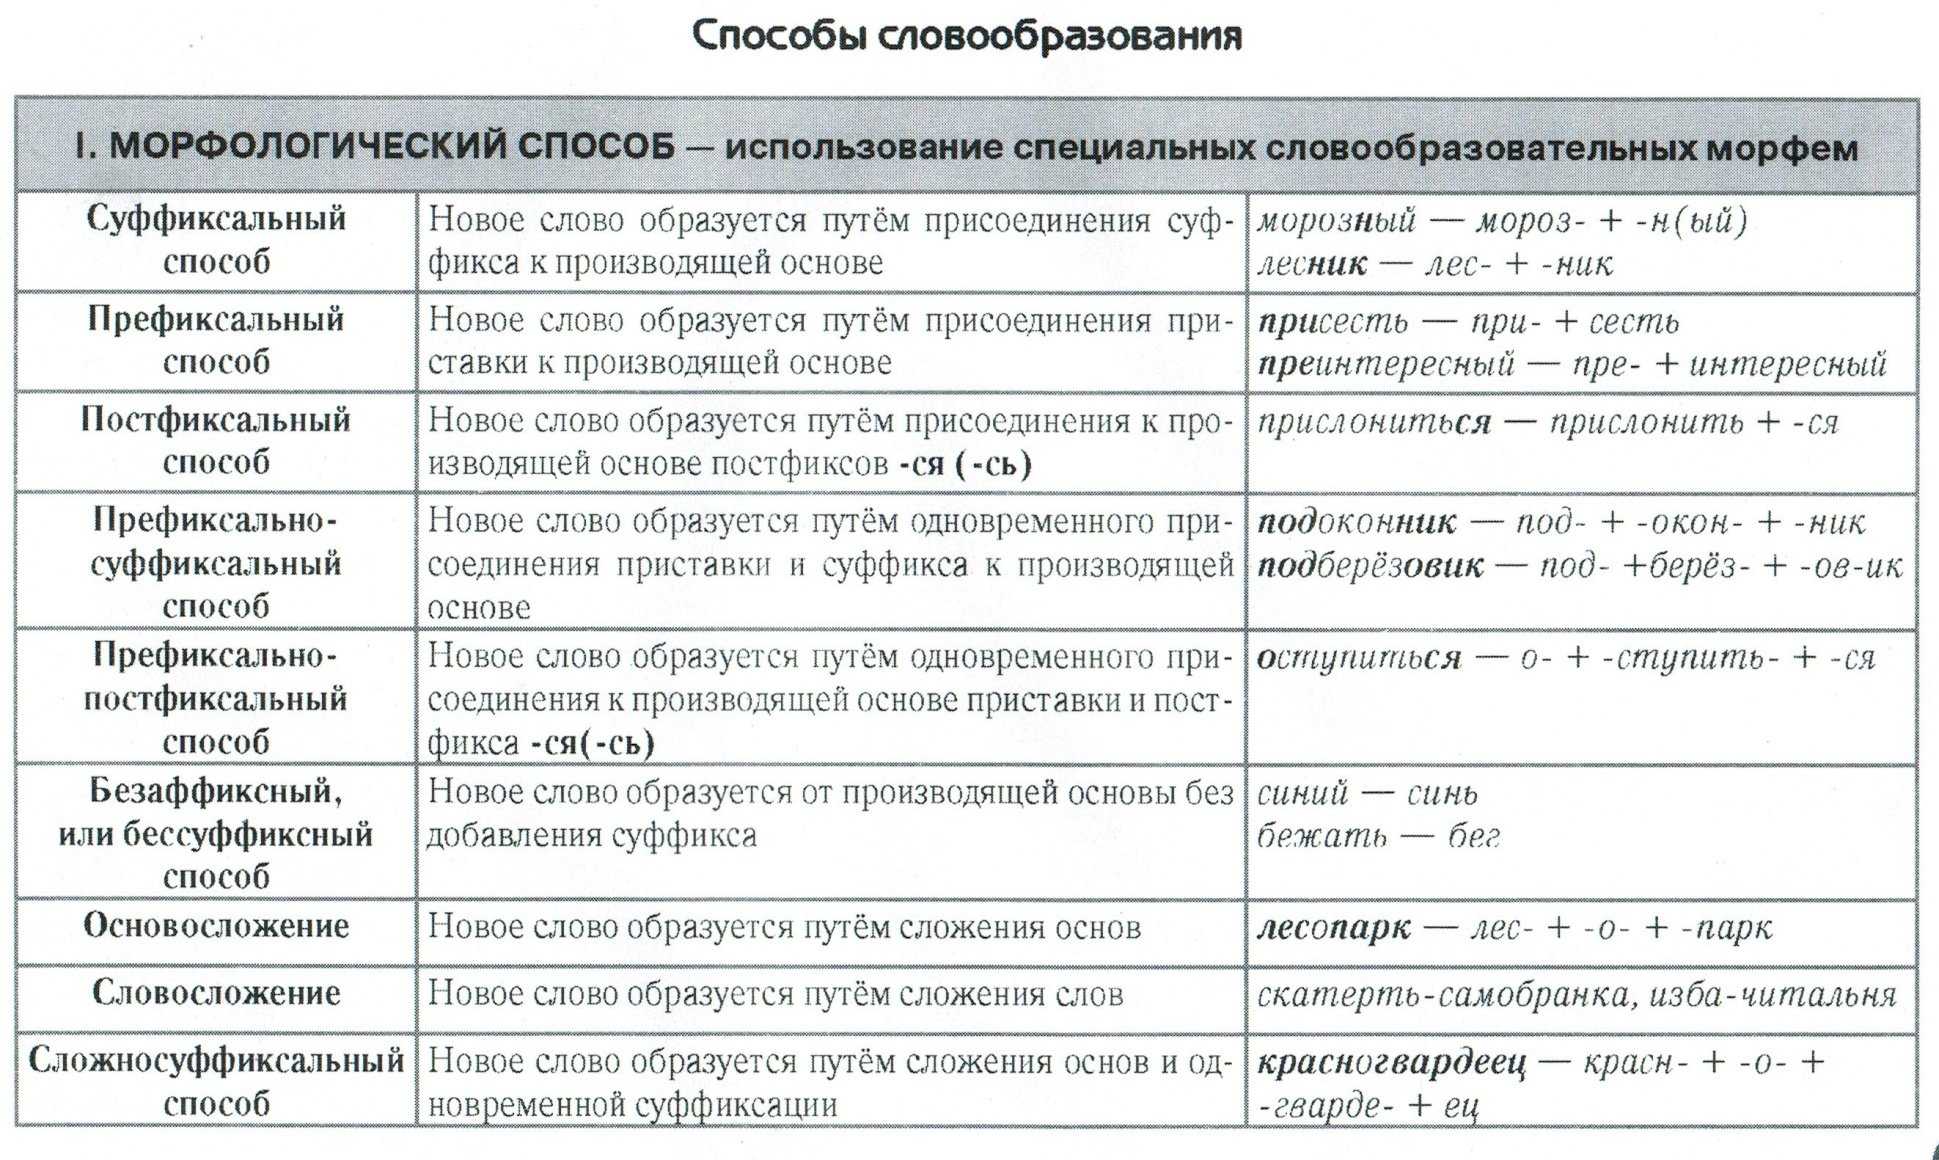 Способы словообразования в русском языке таблица